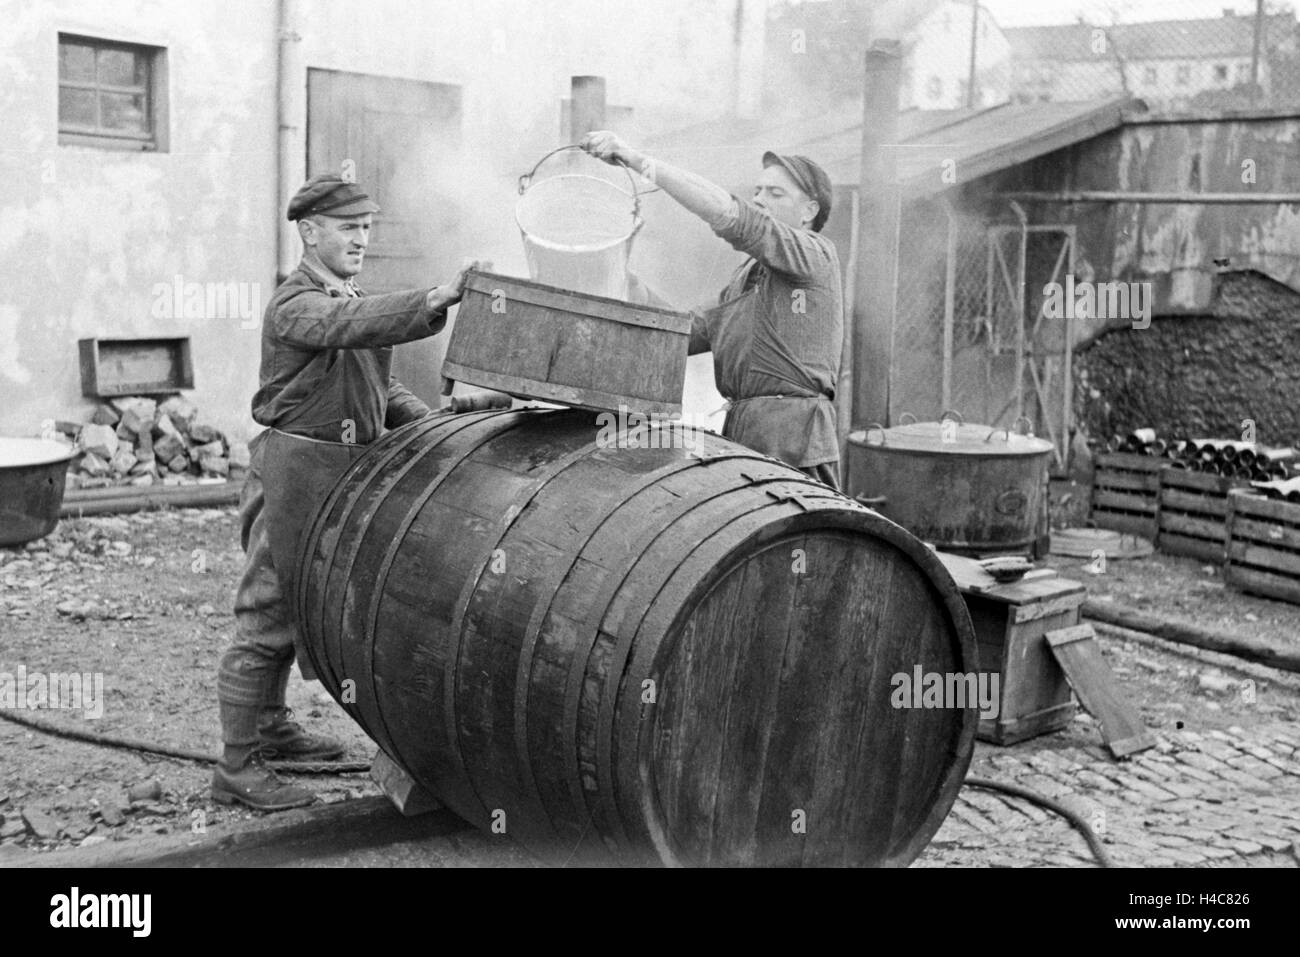 Böttcher Bei der Fassherstellung Für die Weinlese in Serrig, Deutschland 1930er Jahre. Coopers konstruieren ein Fass her den neuen geernteten Wein bei Serrig, Deutschland der 1930er Jahre Stockfoto